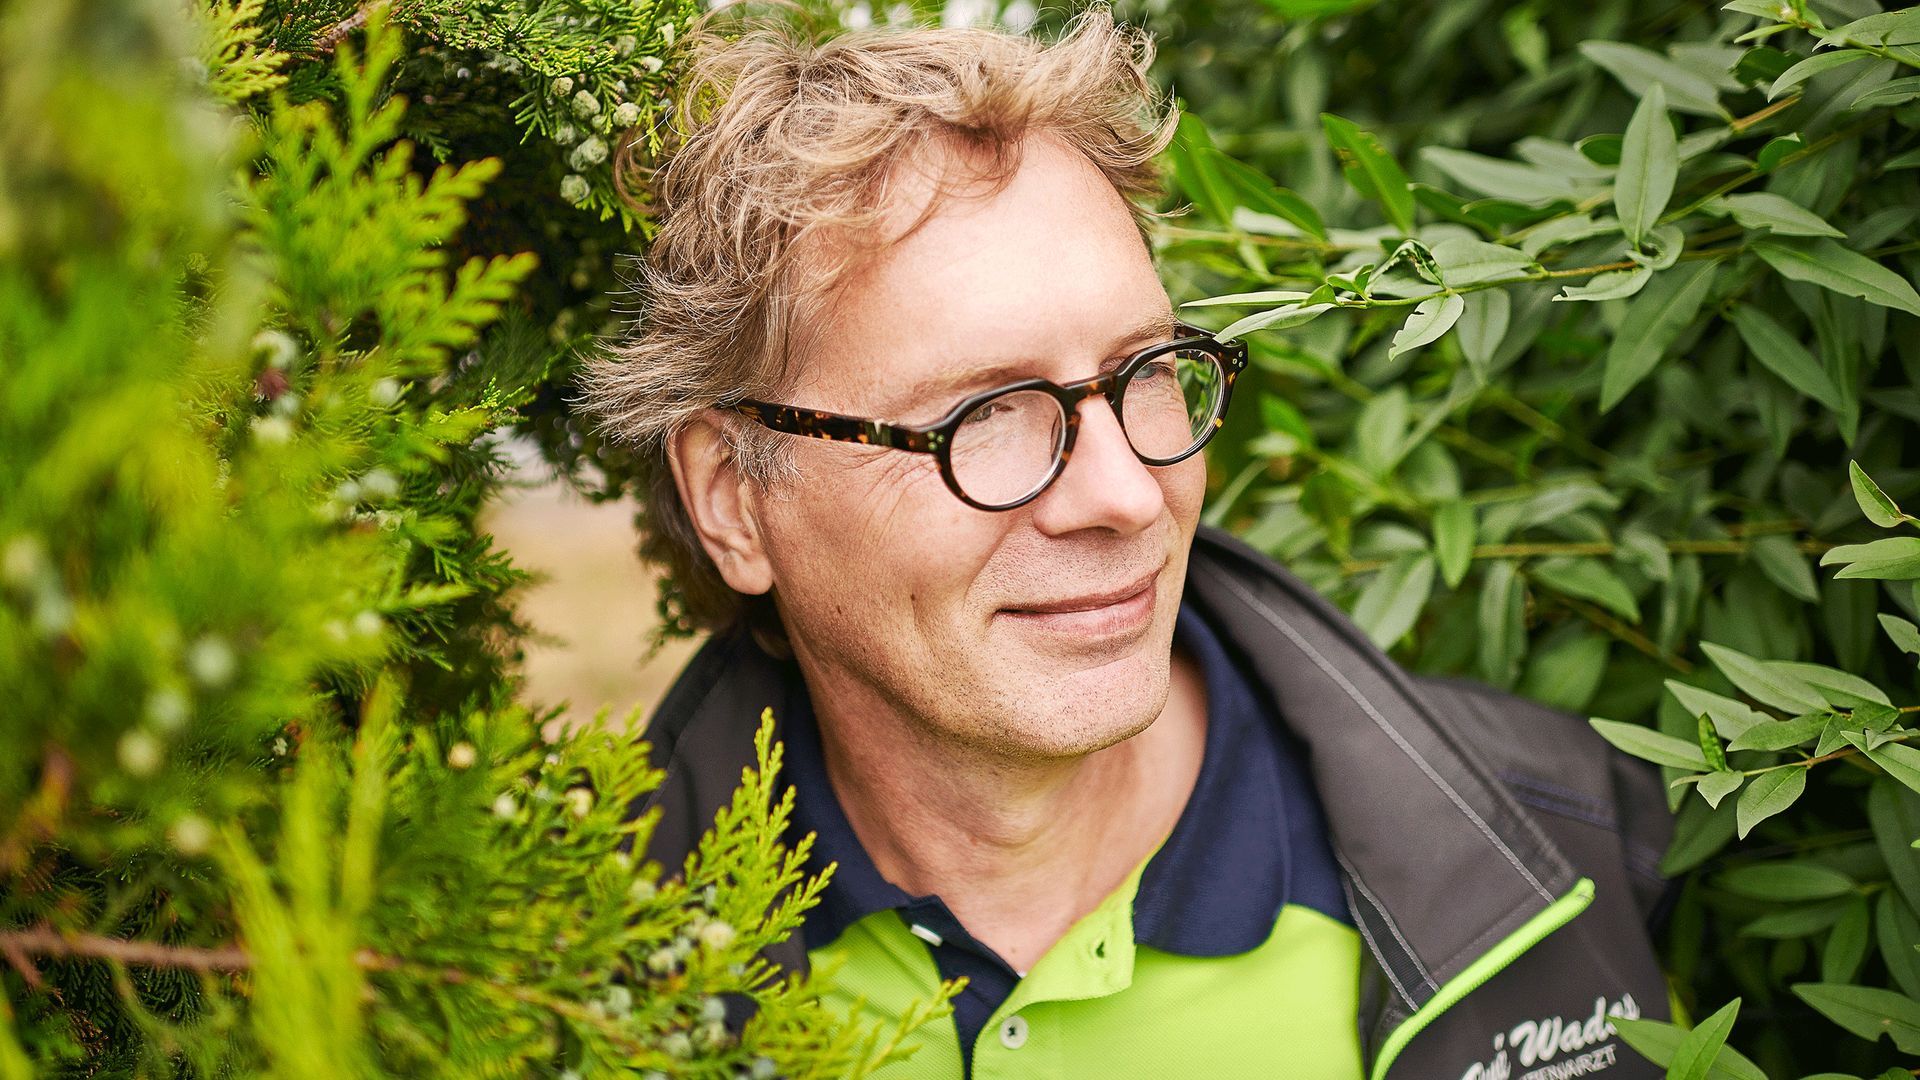 Buchsbaumzünsler geht’s an den Kragen – Pflanzenarzt René Wadas in Niedersachsen